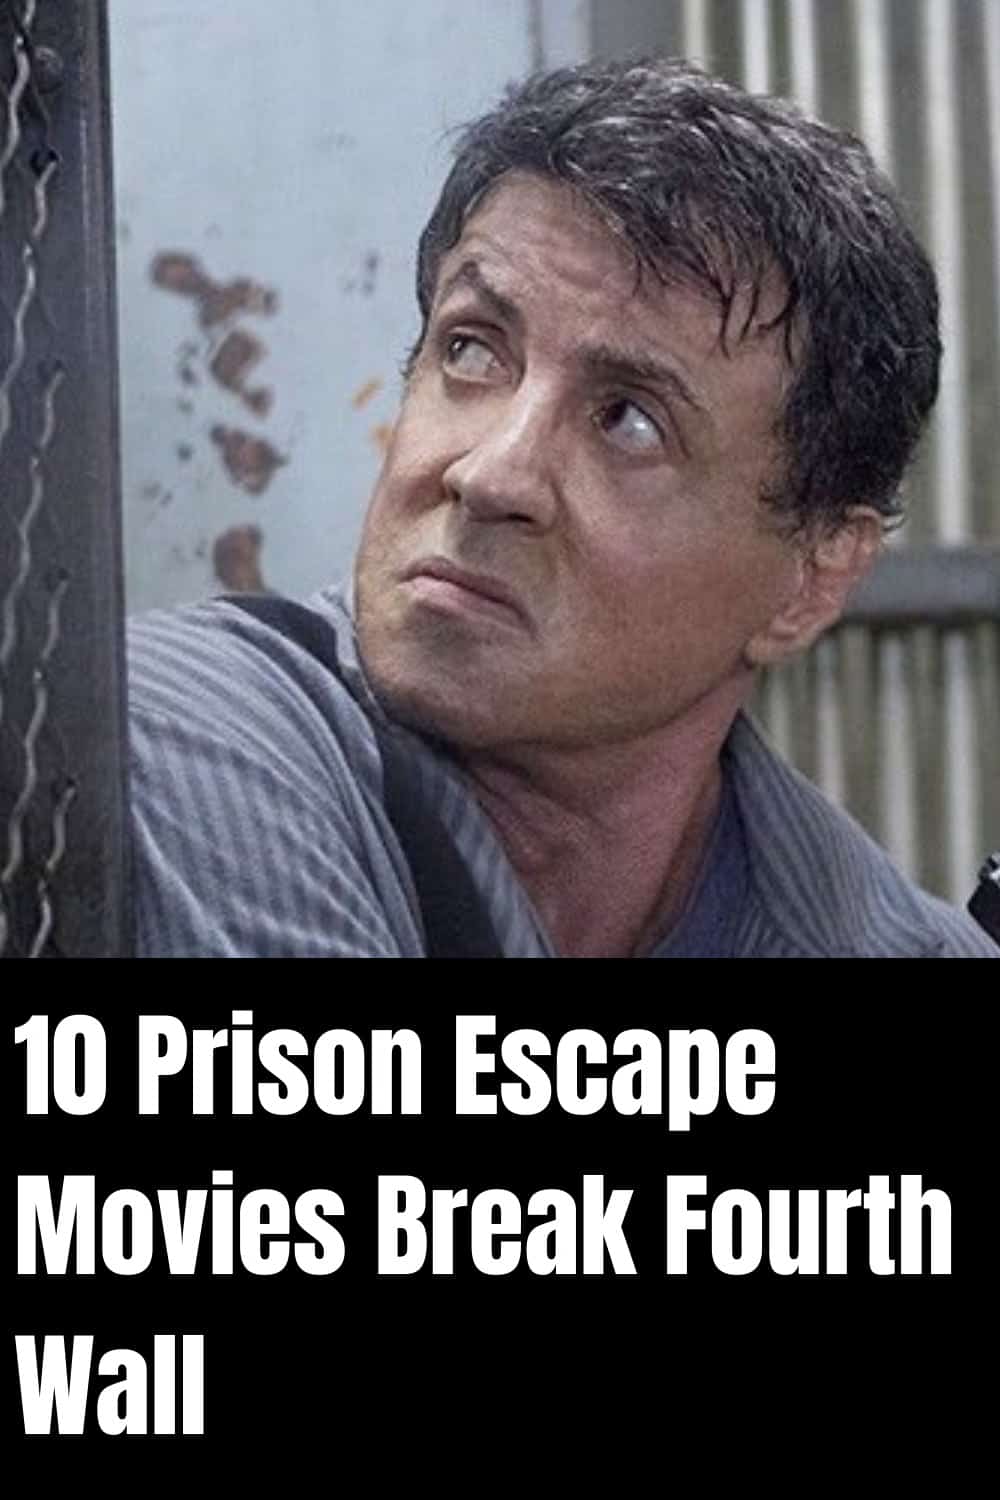 prison escape movies